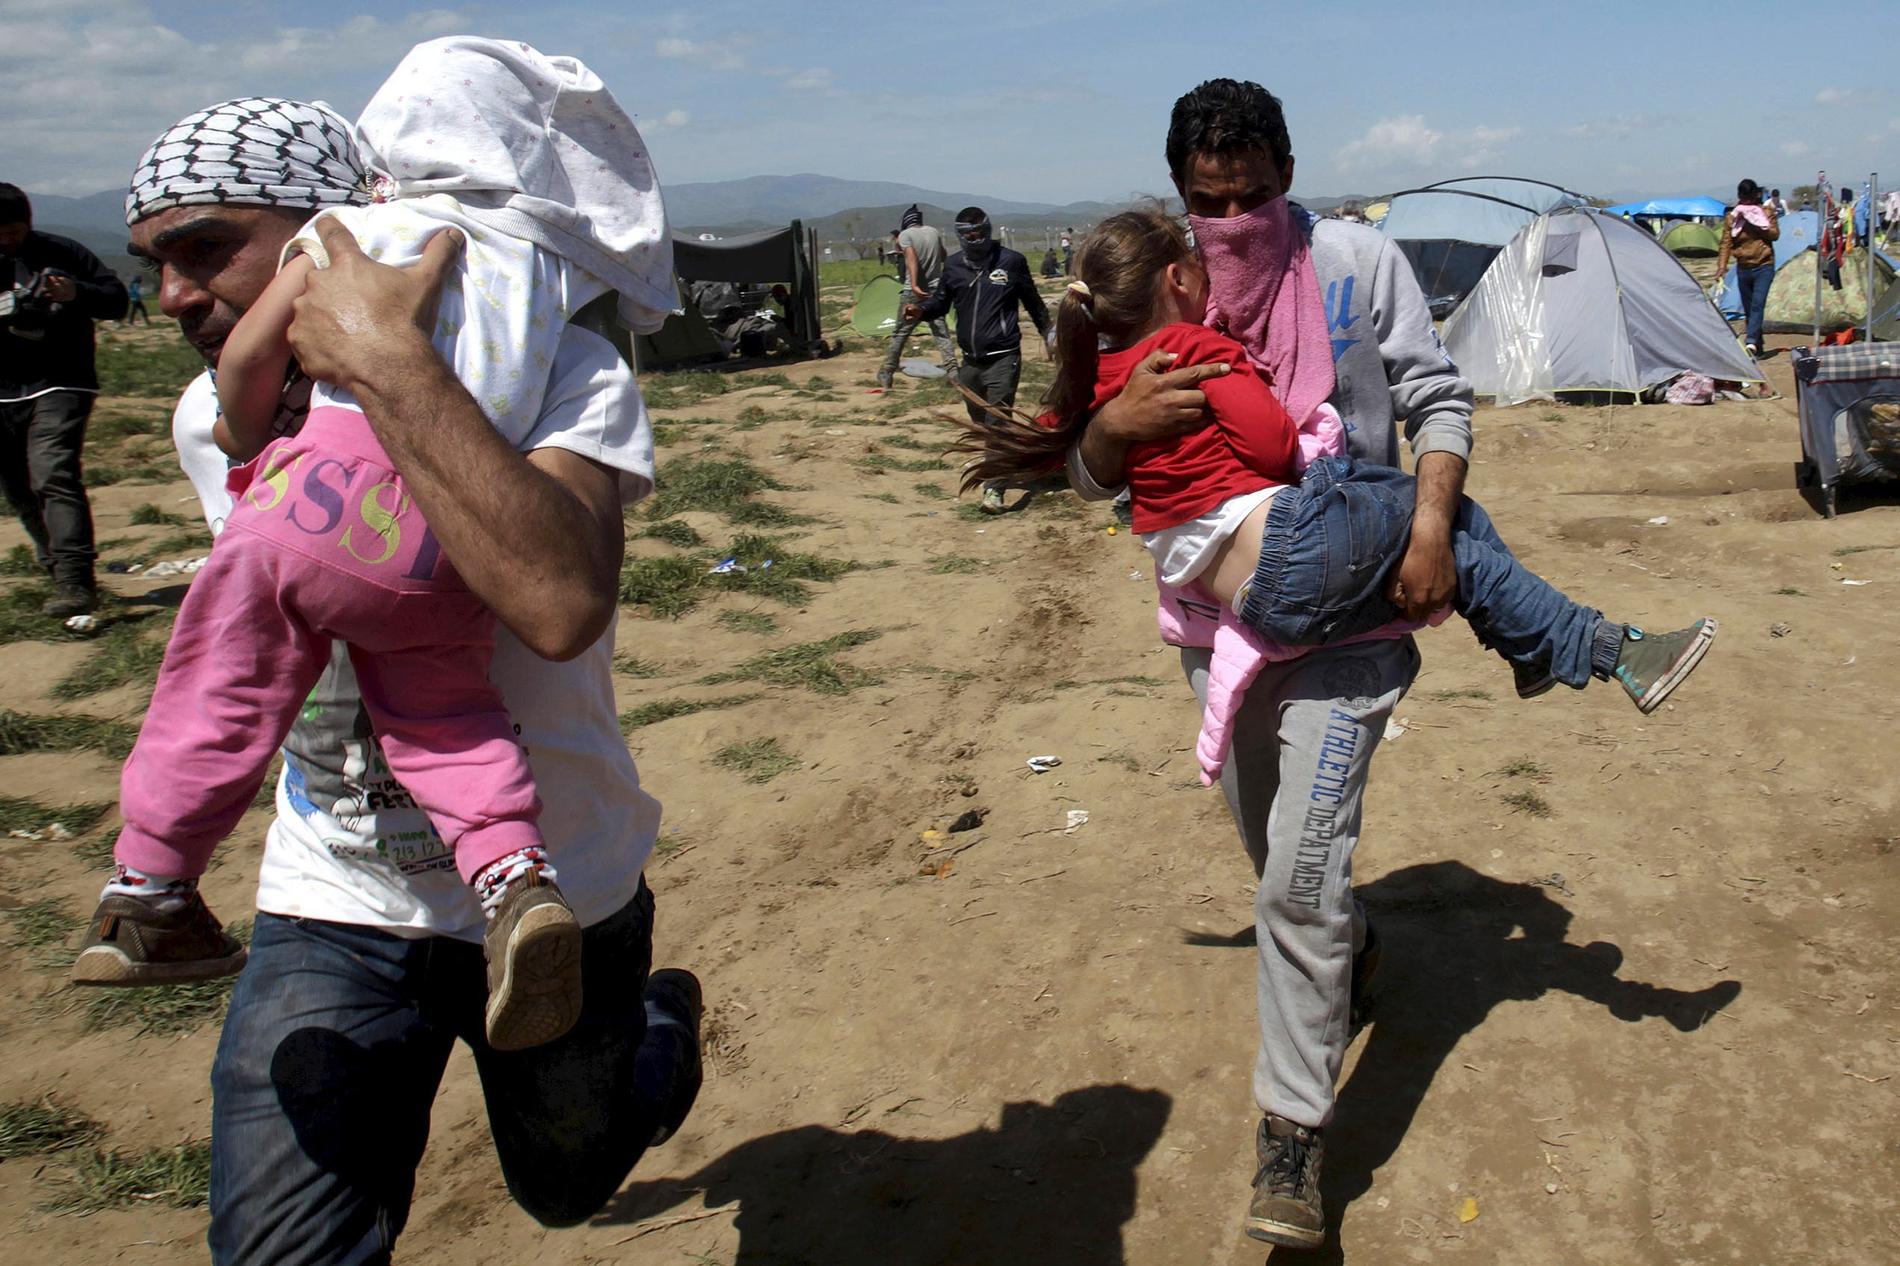 Hundratals migranter skadades på söndagen när de besköts med tårgas vid gränsen mellan Makedonien och Grekland. Den Makedonska polisen sköt mot  flyktingar på den grekiska sidan av gränsen vid övergången Idomeni.